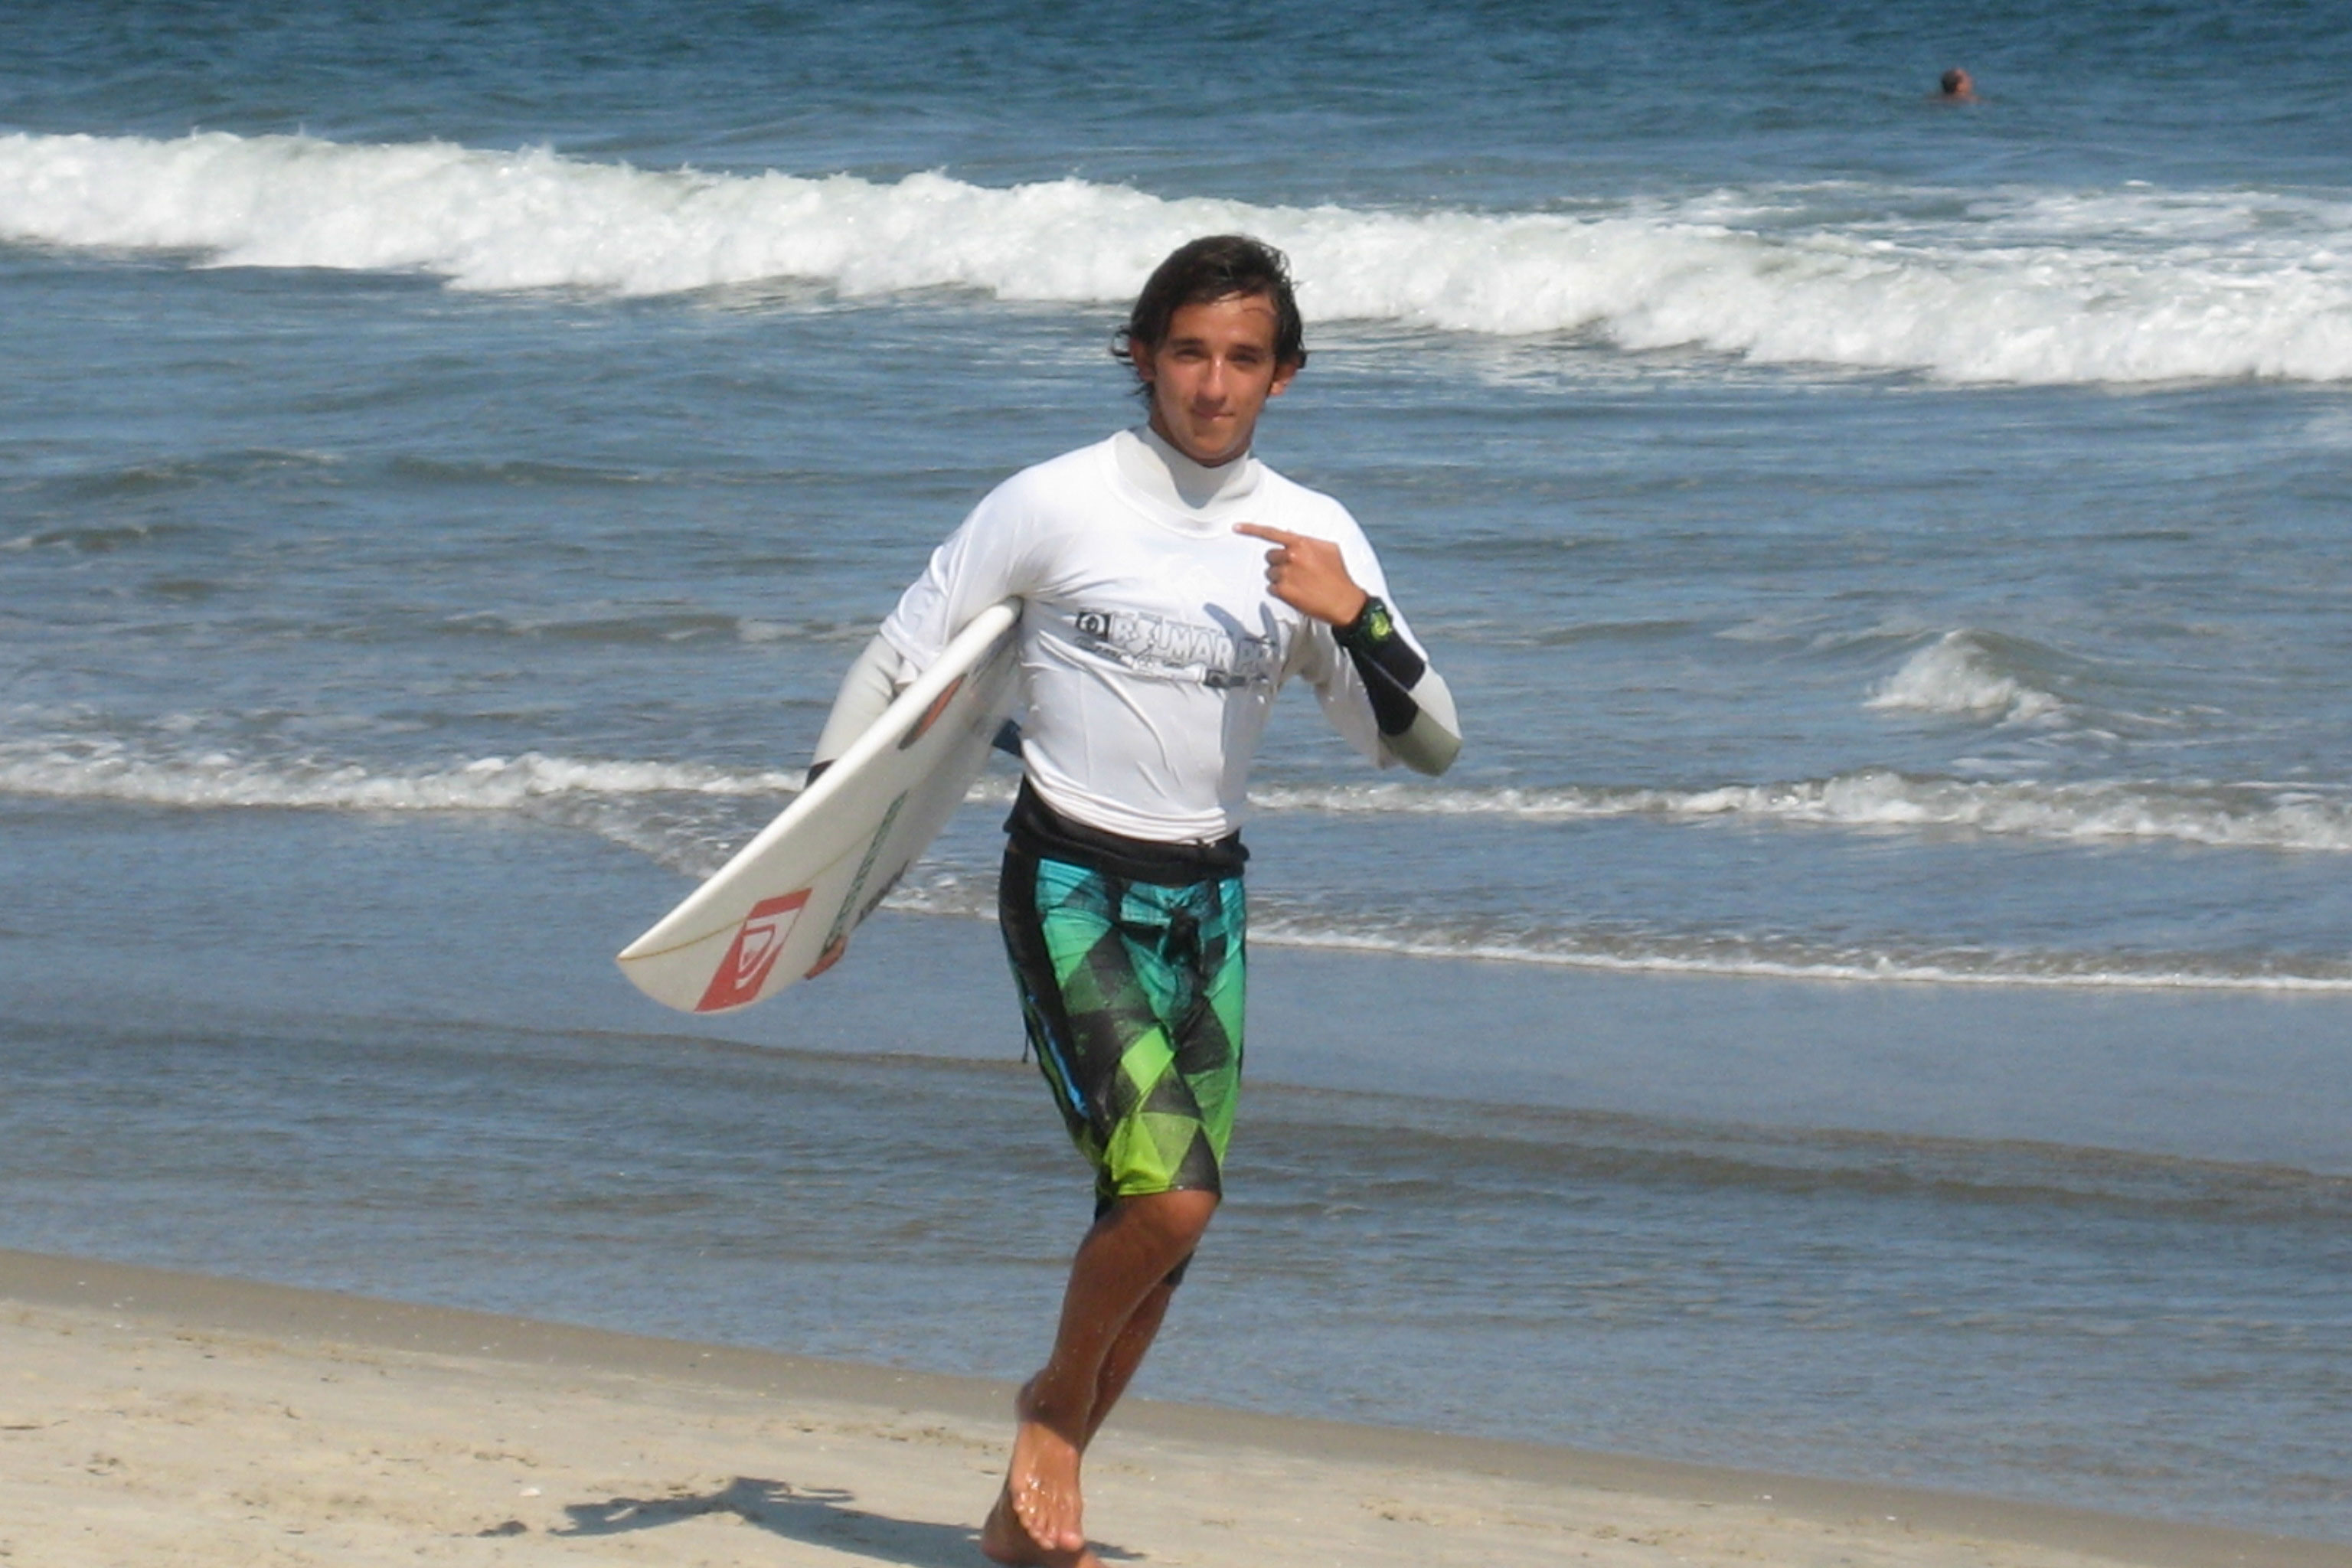 Derek Gomes, se ubica en el puesto número 22 del mundo de los 20 millones de surfistas que registra la International World Games Association. (Foto: Archivo)